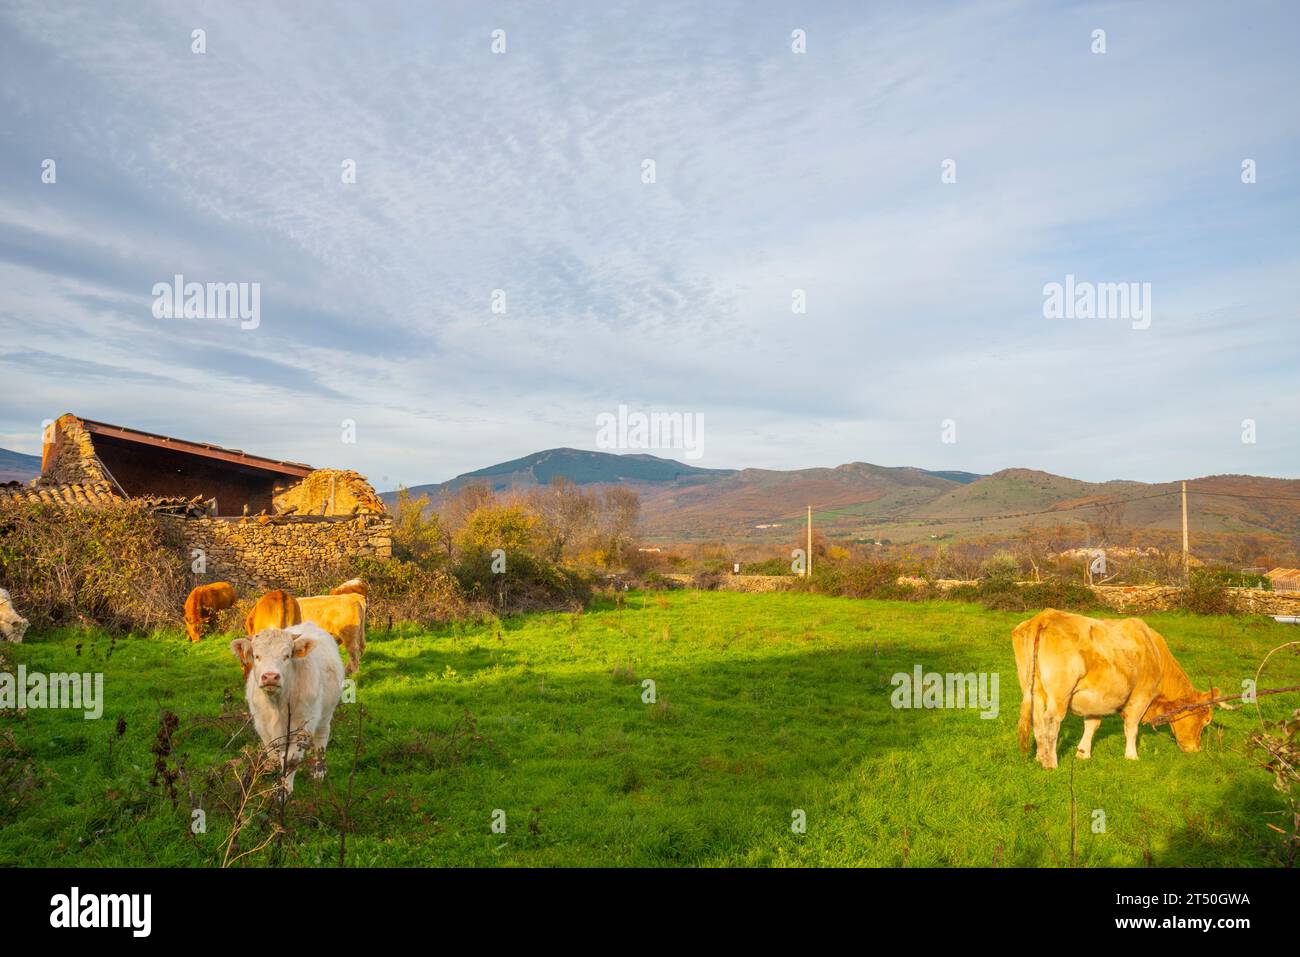 Vaches dans un pré.Piñuecar, province de Madrid, Espagne. Banque D'Images